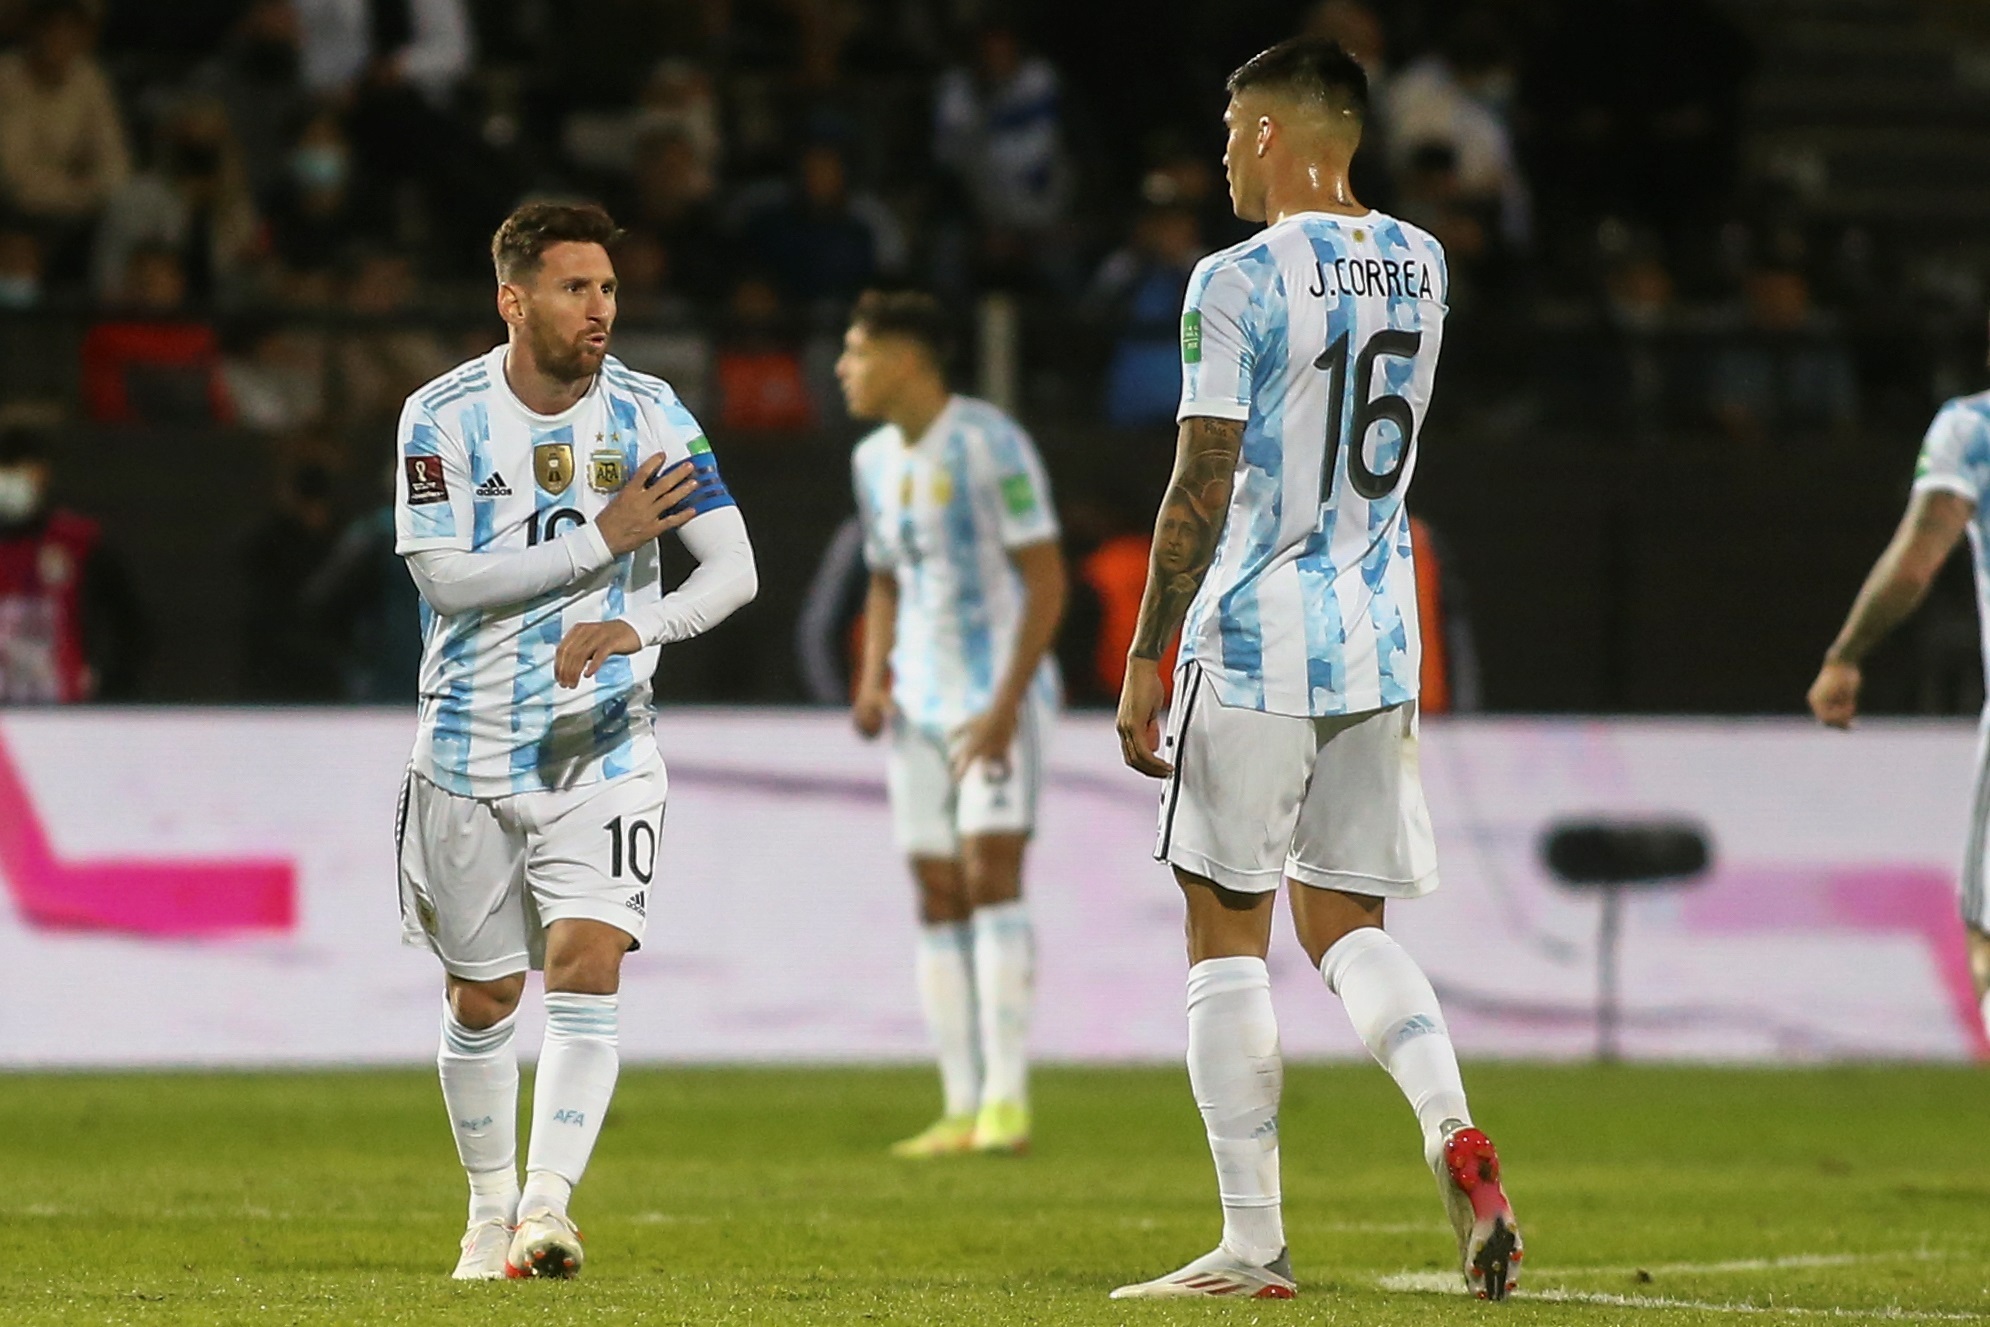 Lionel Messi tuvo pocos minutos de juego ante Uruguay porque el objetivo es Brasil, dice el DT de Argentina